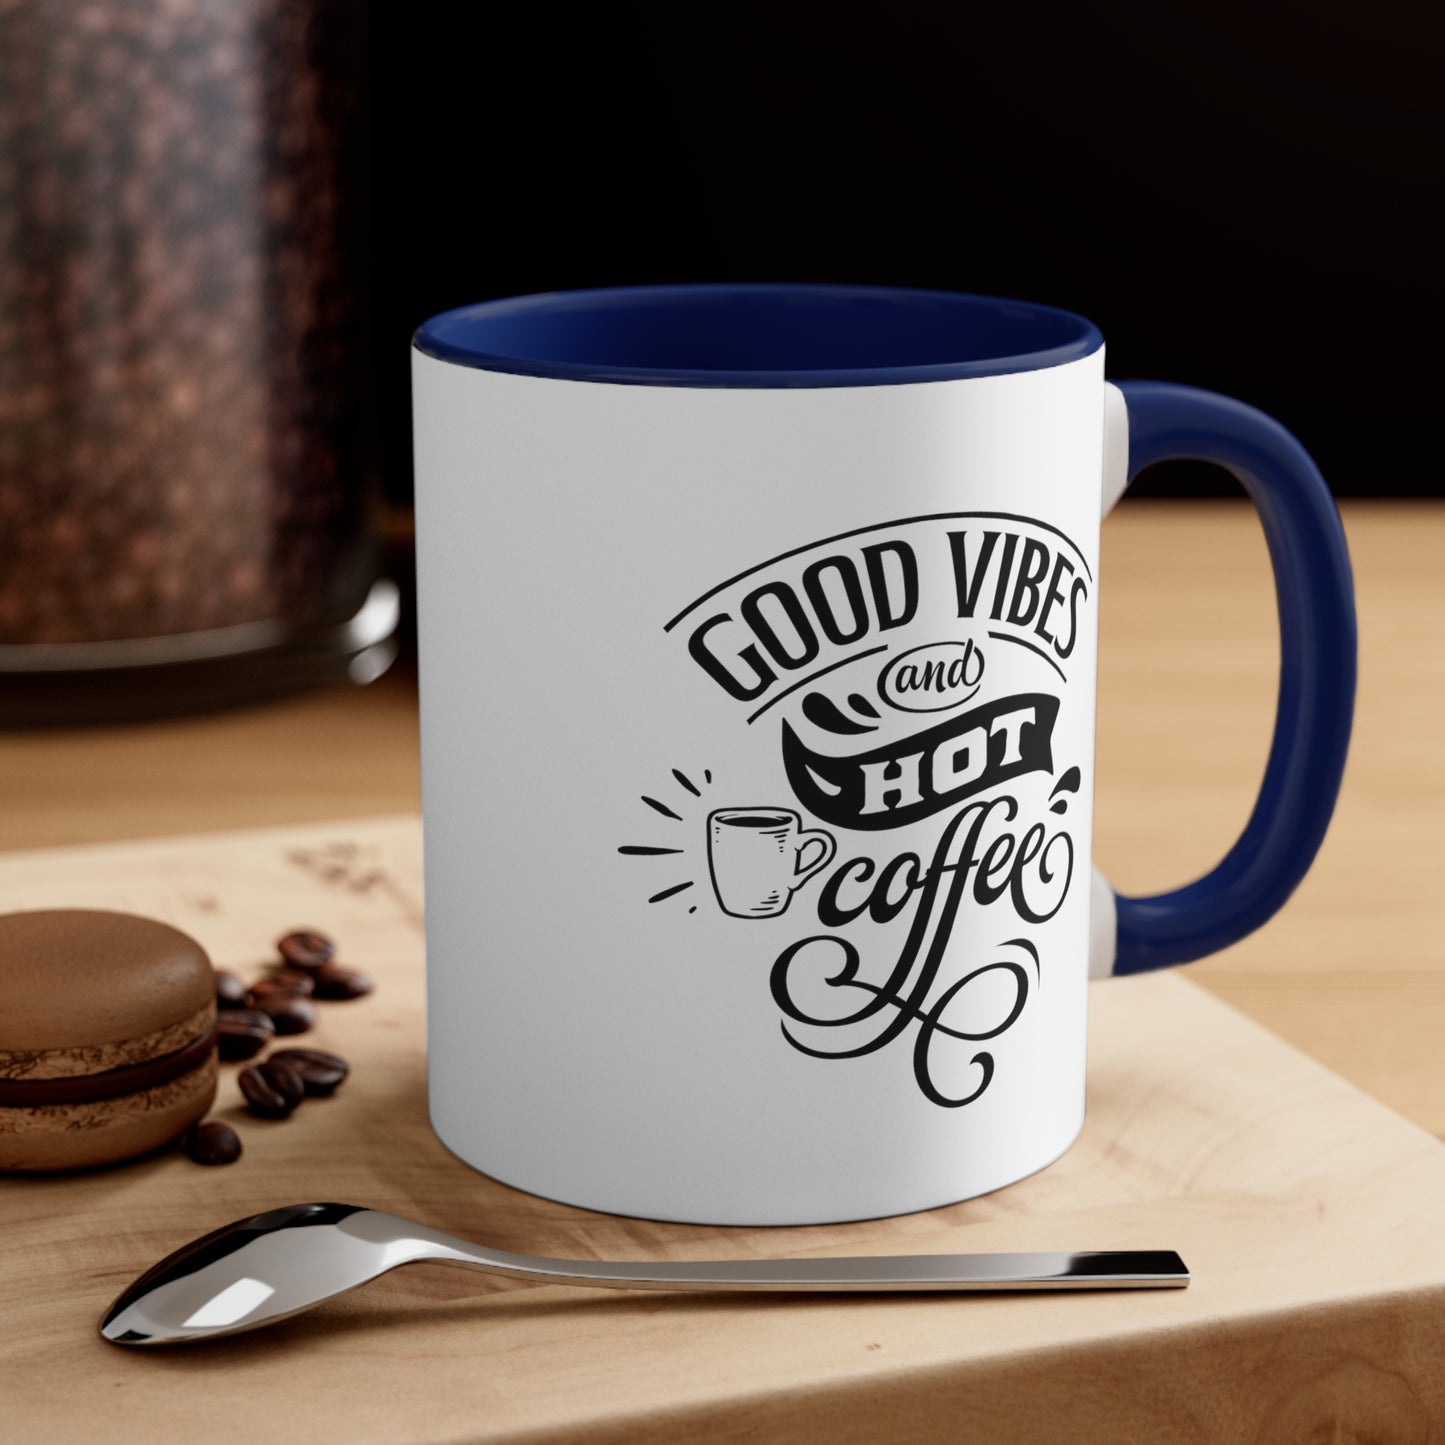 Good Vibes and Hot Coffee 11oz Mug